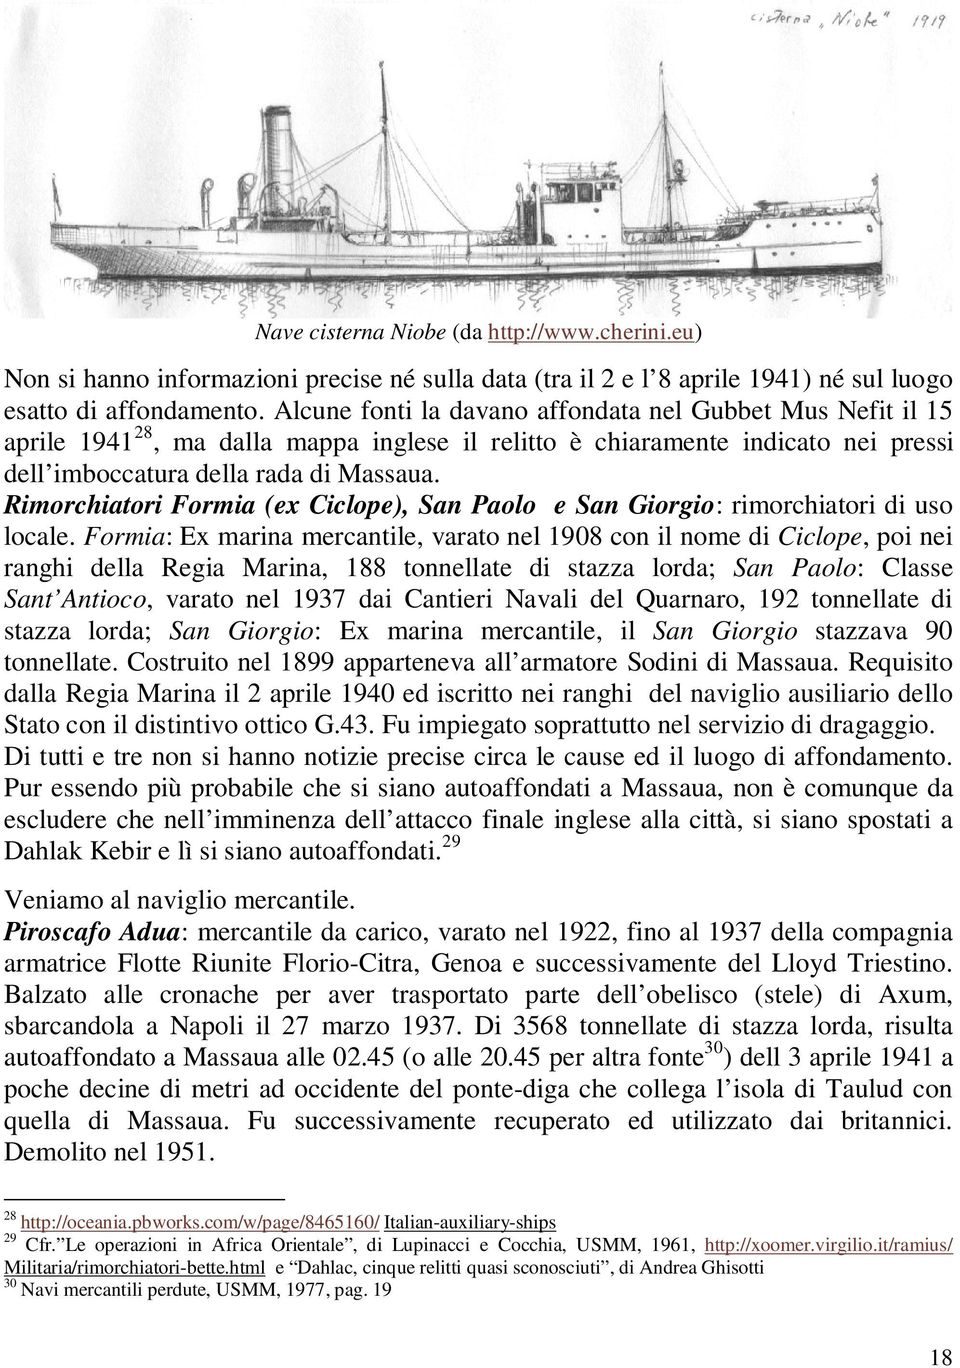 Rimorchiatori Formia (ex Ciclope), San Paolo e San Giorgio: rimorchiatori di uso locale.